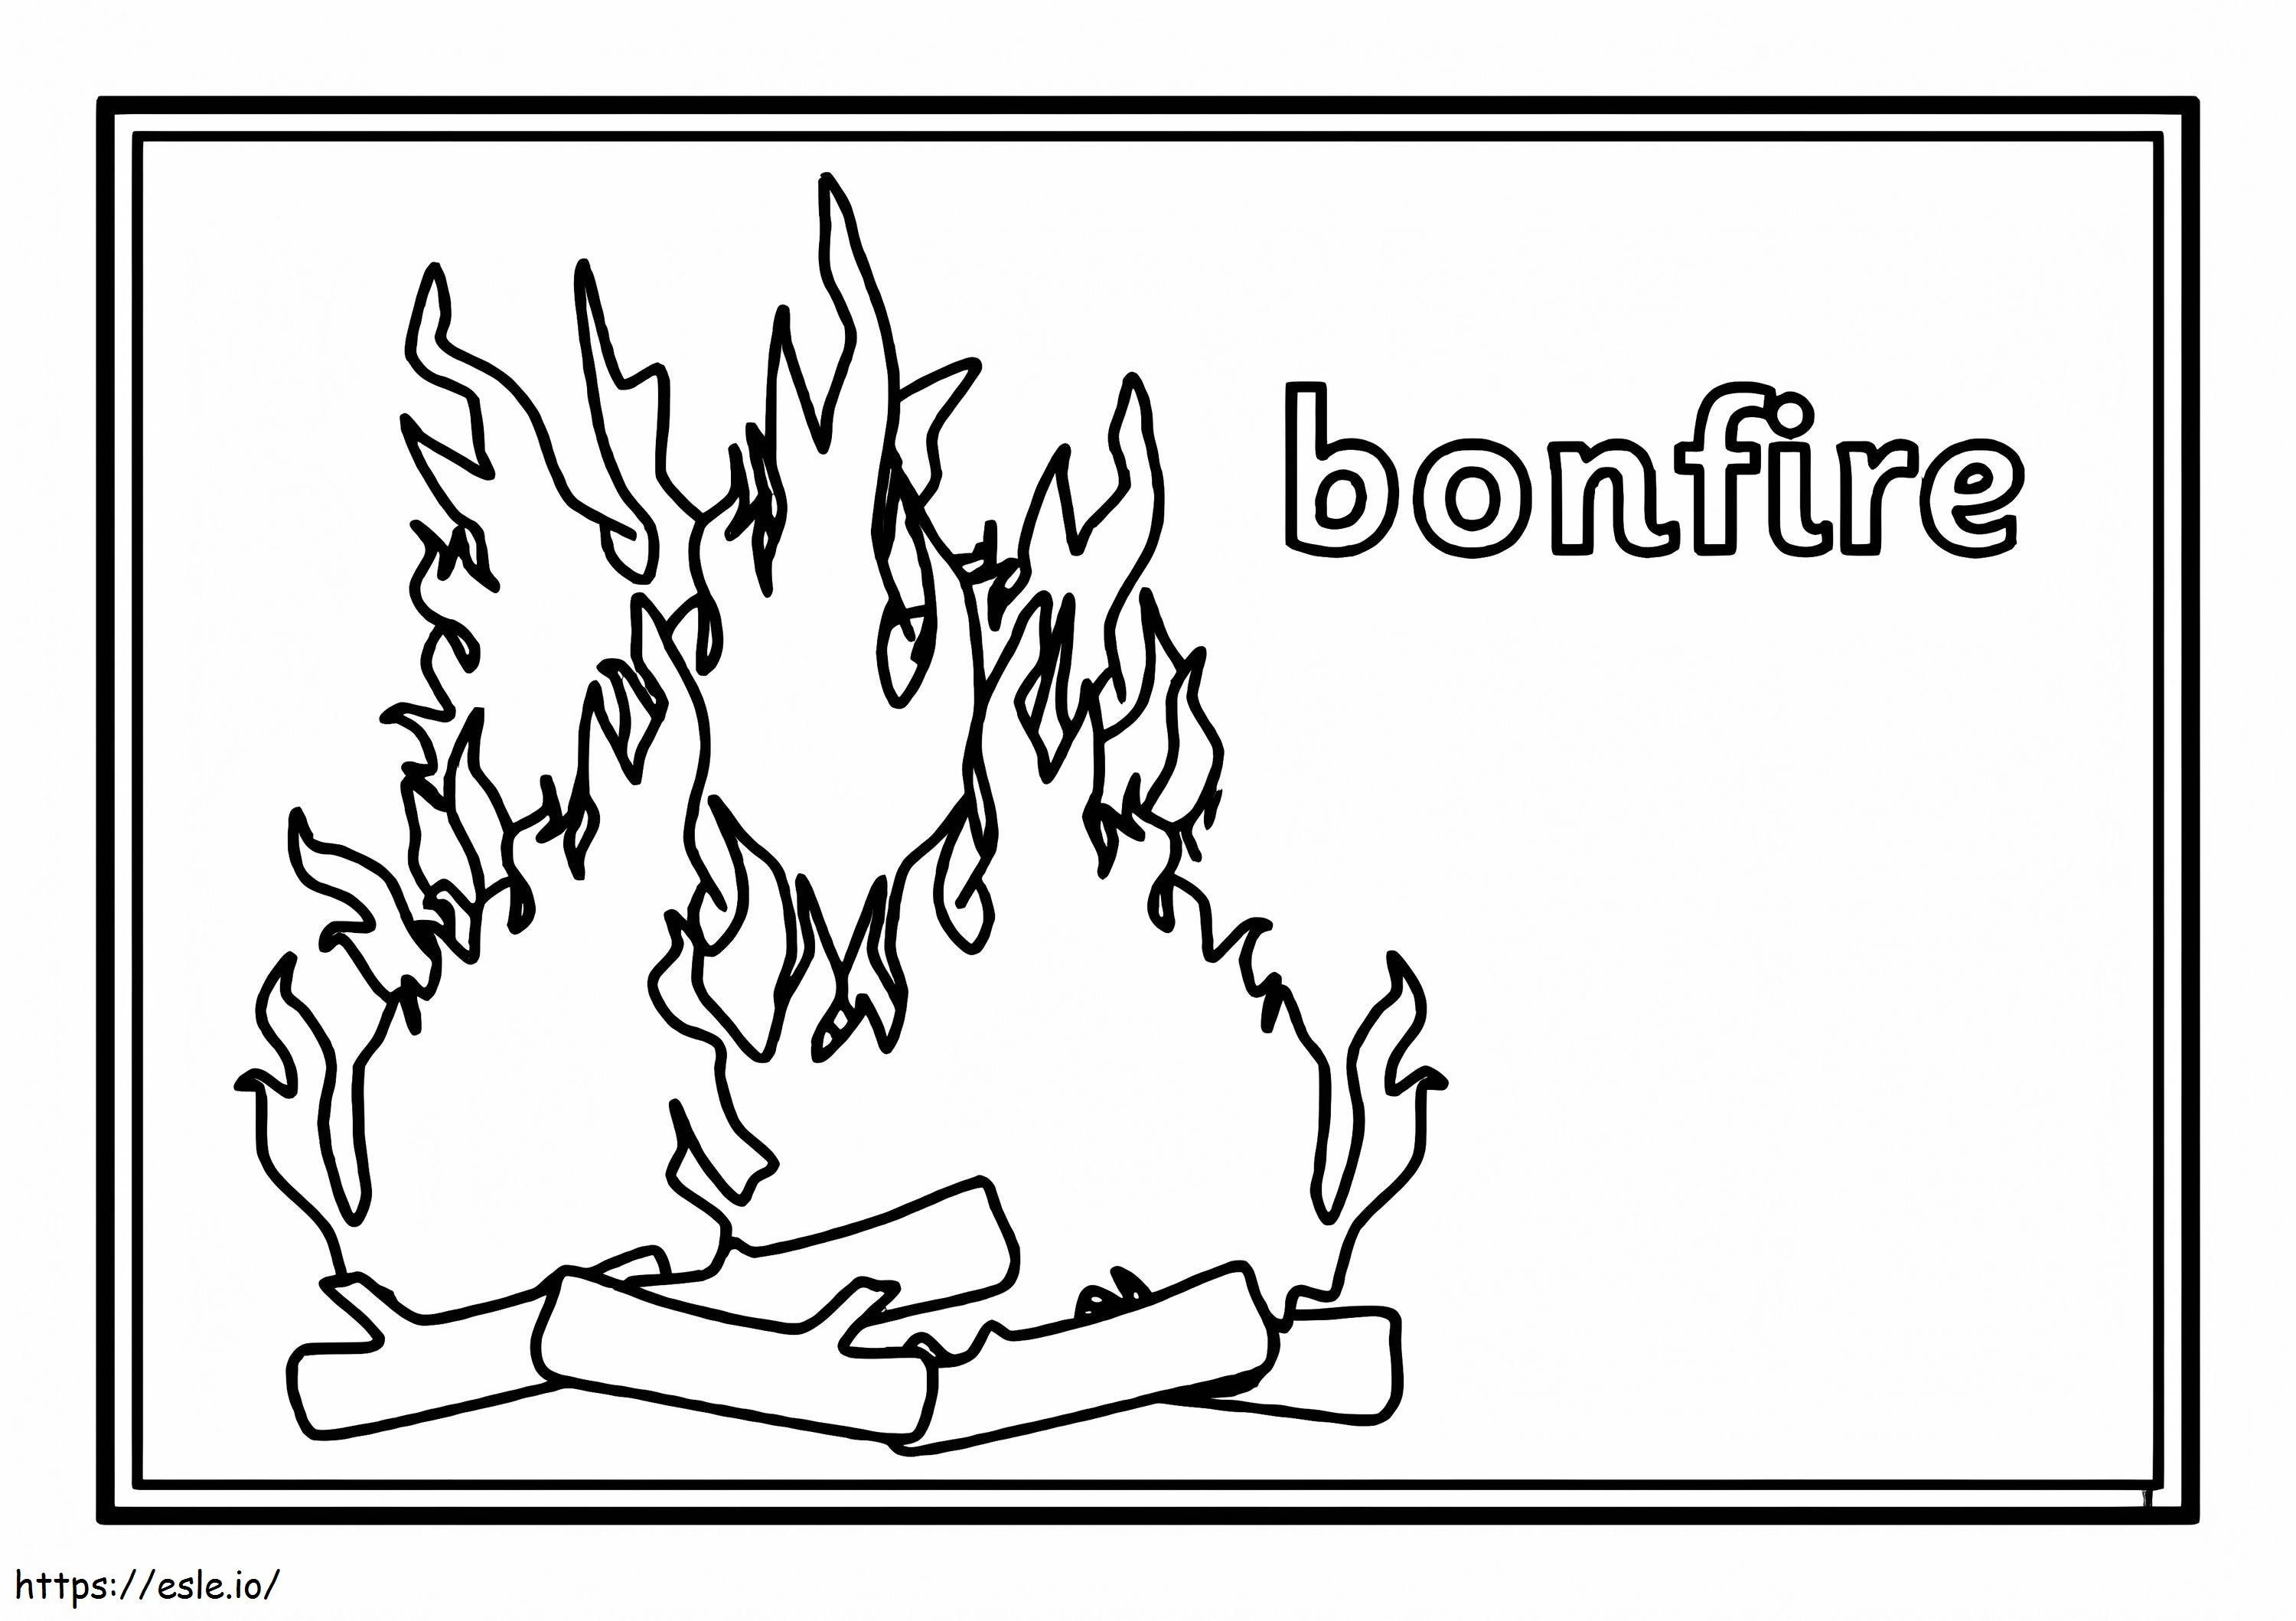 Bonfire 2 coloring page